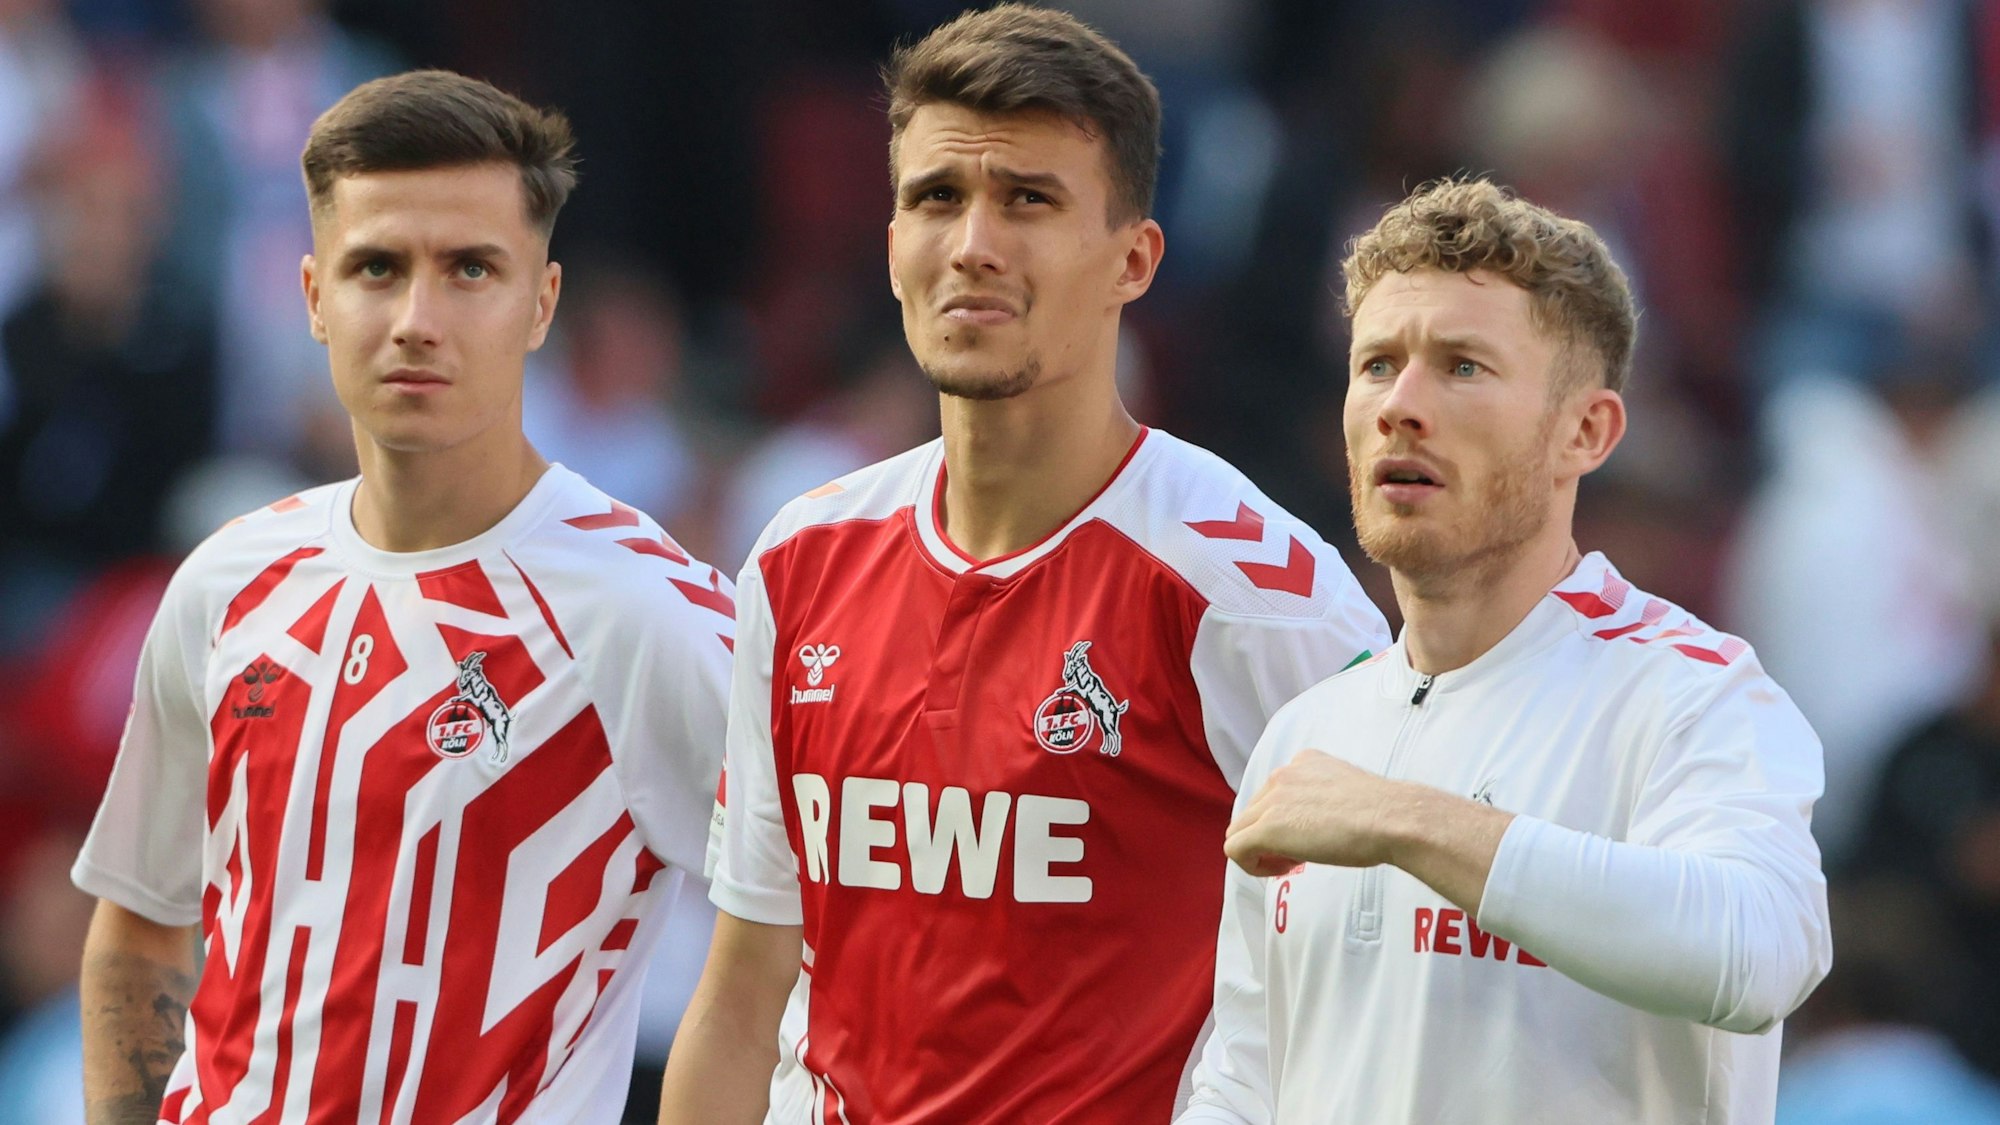 Denis Huseinbasic, Dejan Ljubicic und Florian Kainz überzeugten in der vergangenen Saison im Kölner Mittelfeld.